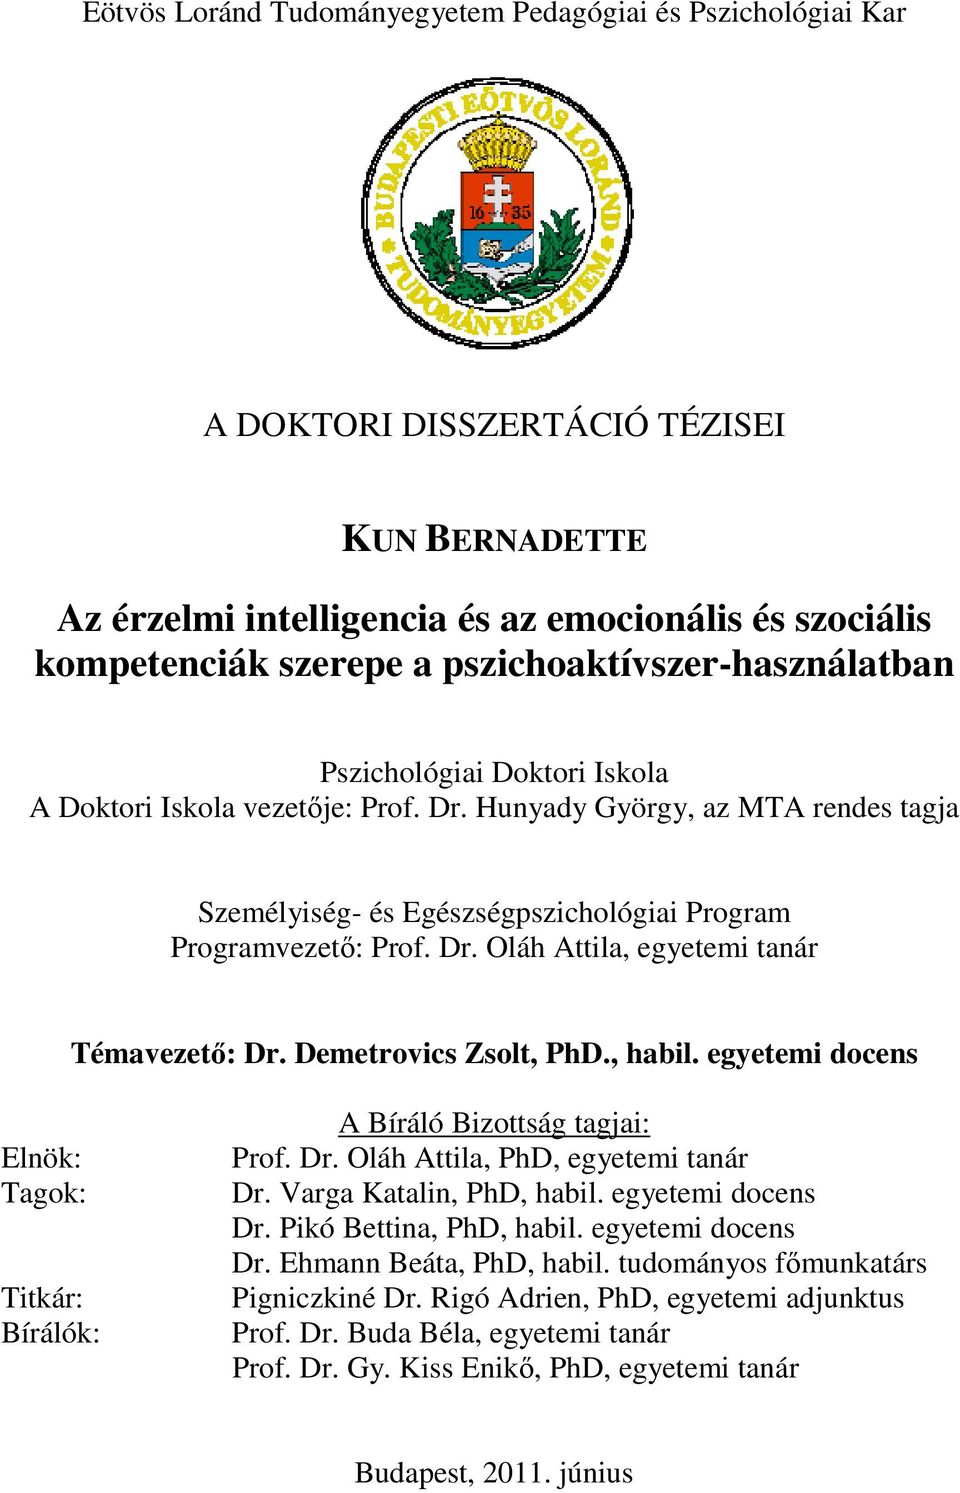 Az érzelmi intelligencia és az emocionális és szociális kompetenciák  szerepe a pszichoaktívszer-használatban - PDF Ingyenes letöltés